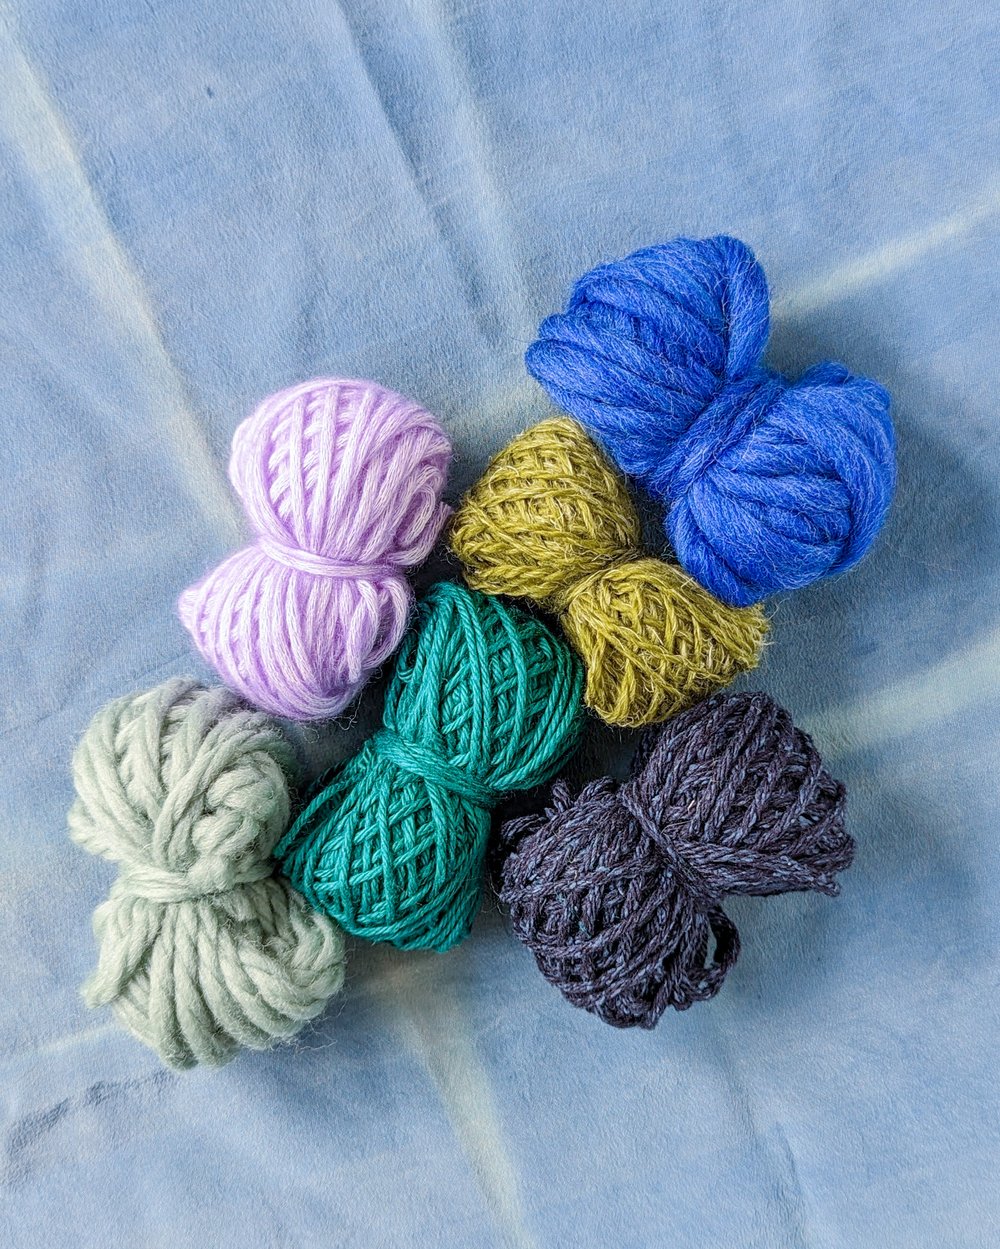  Weaving Loom Kit, Knitting for Beginners, Make Your